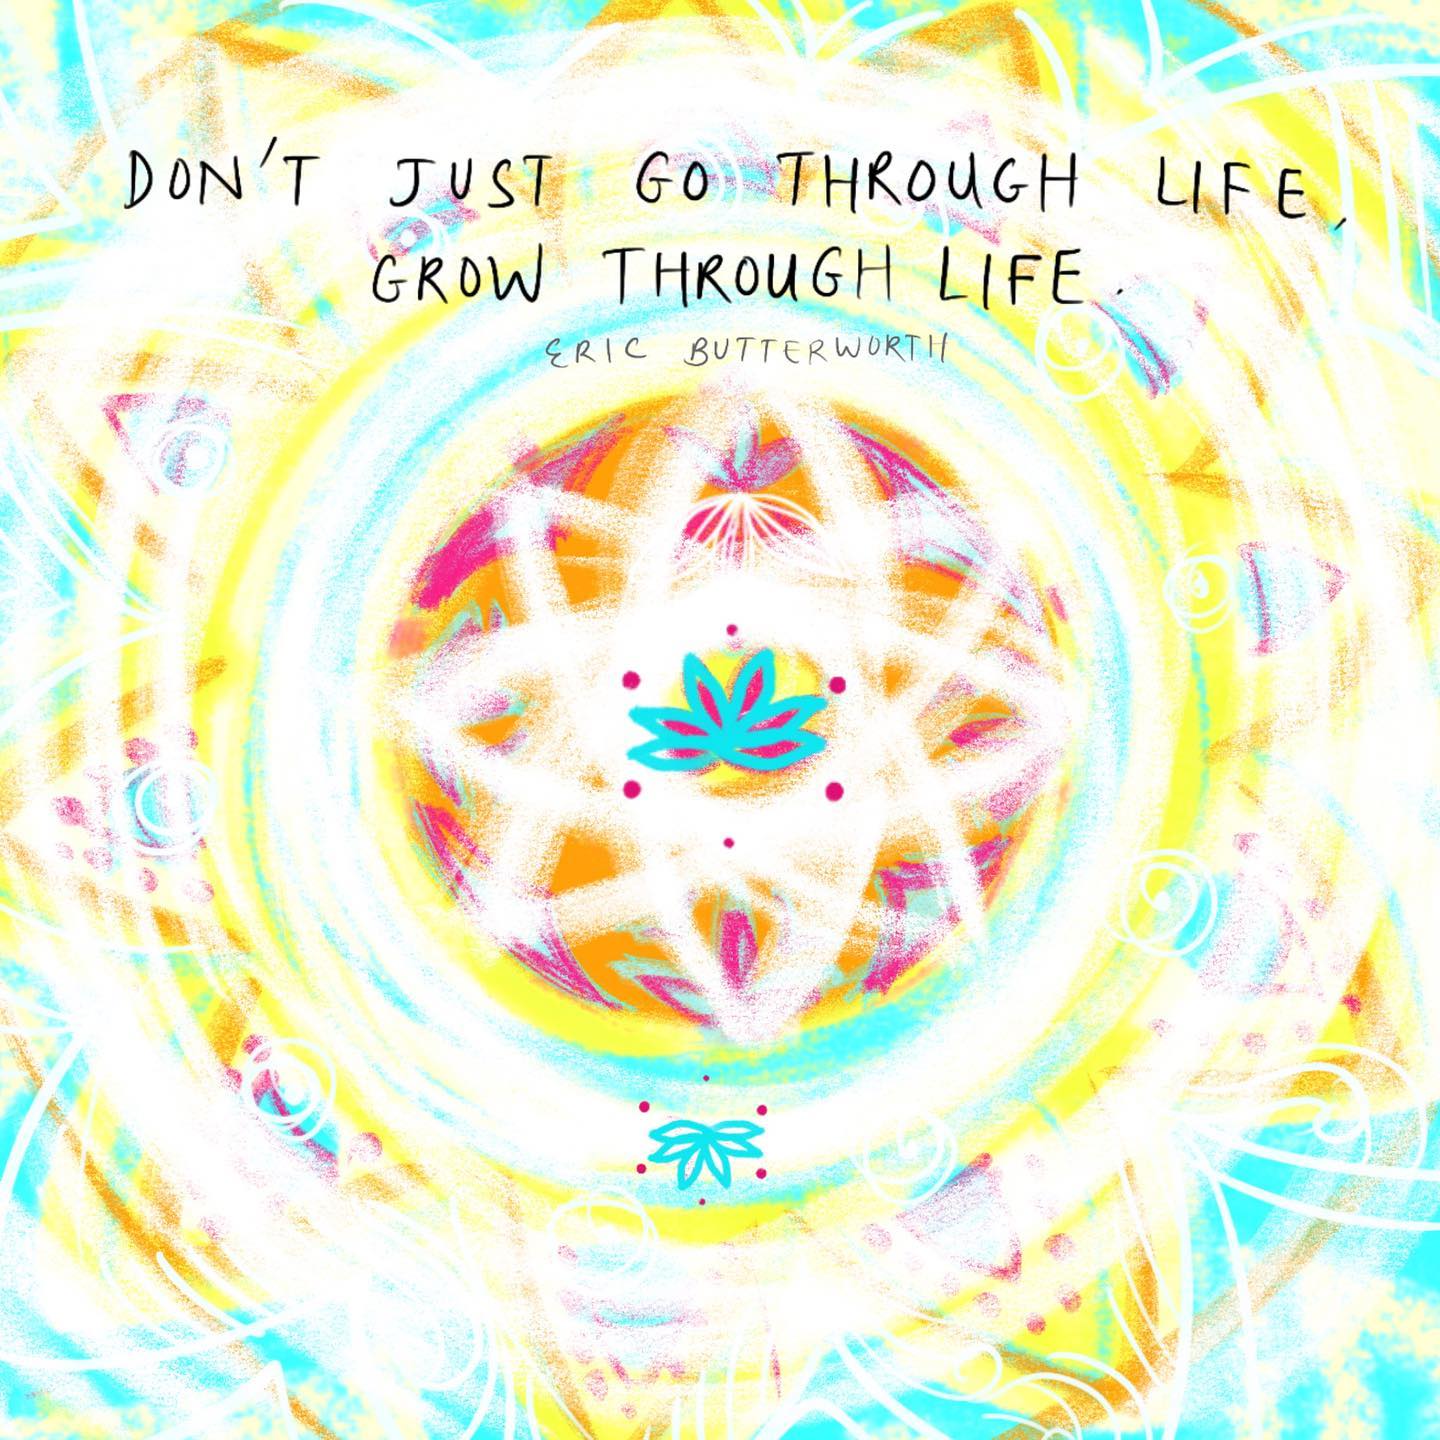 Grow through life.